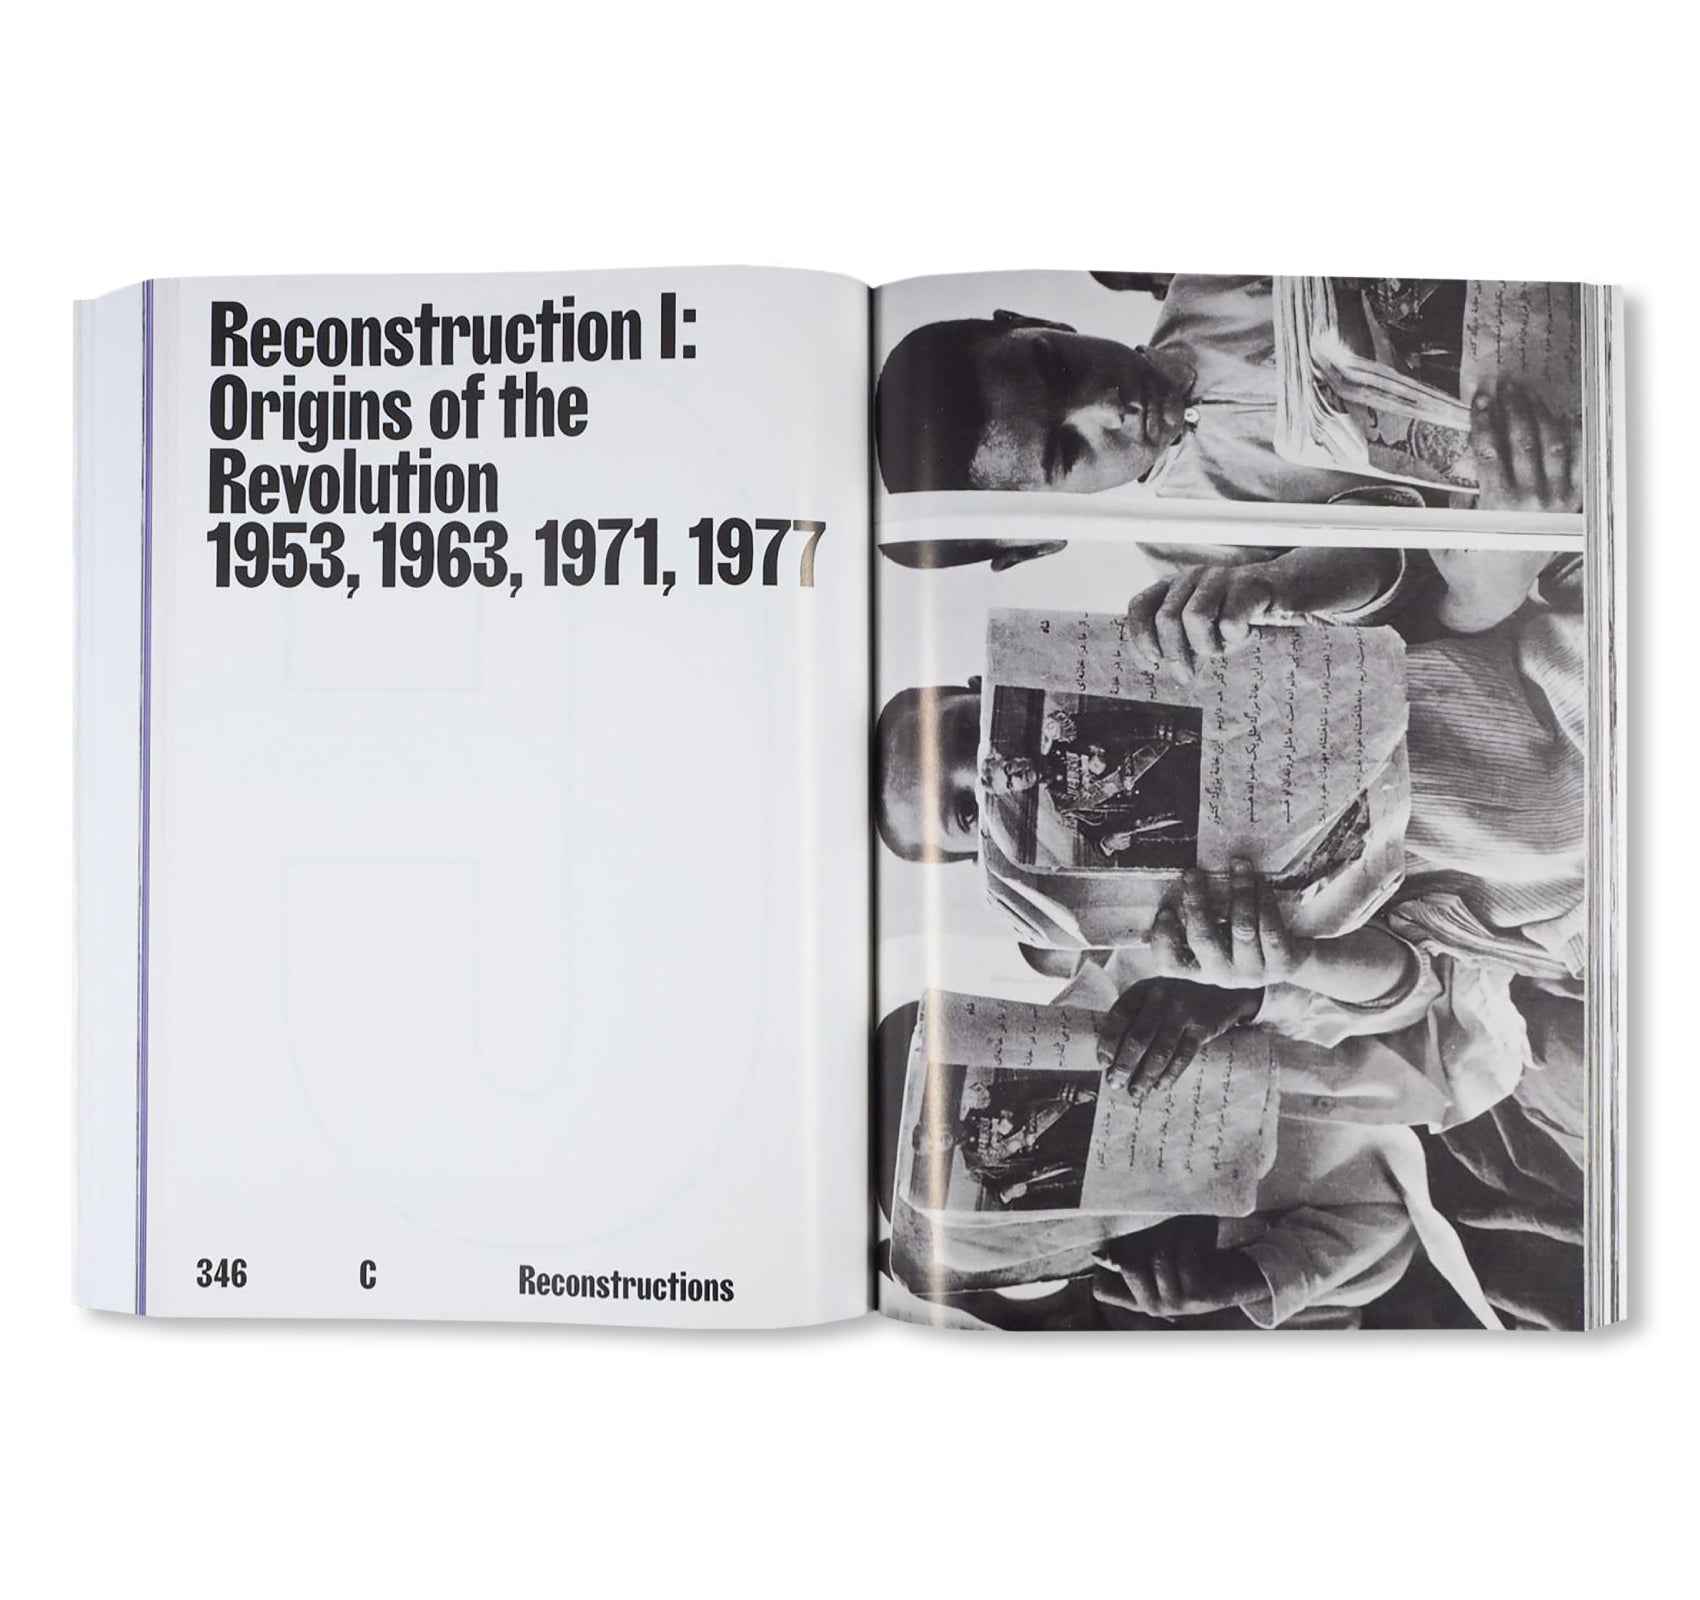 ENGHELAB STREET, A REVOLUTION THROUGH BOOKS: IRAN 1979-1983 by Hannah Darabi